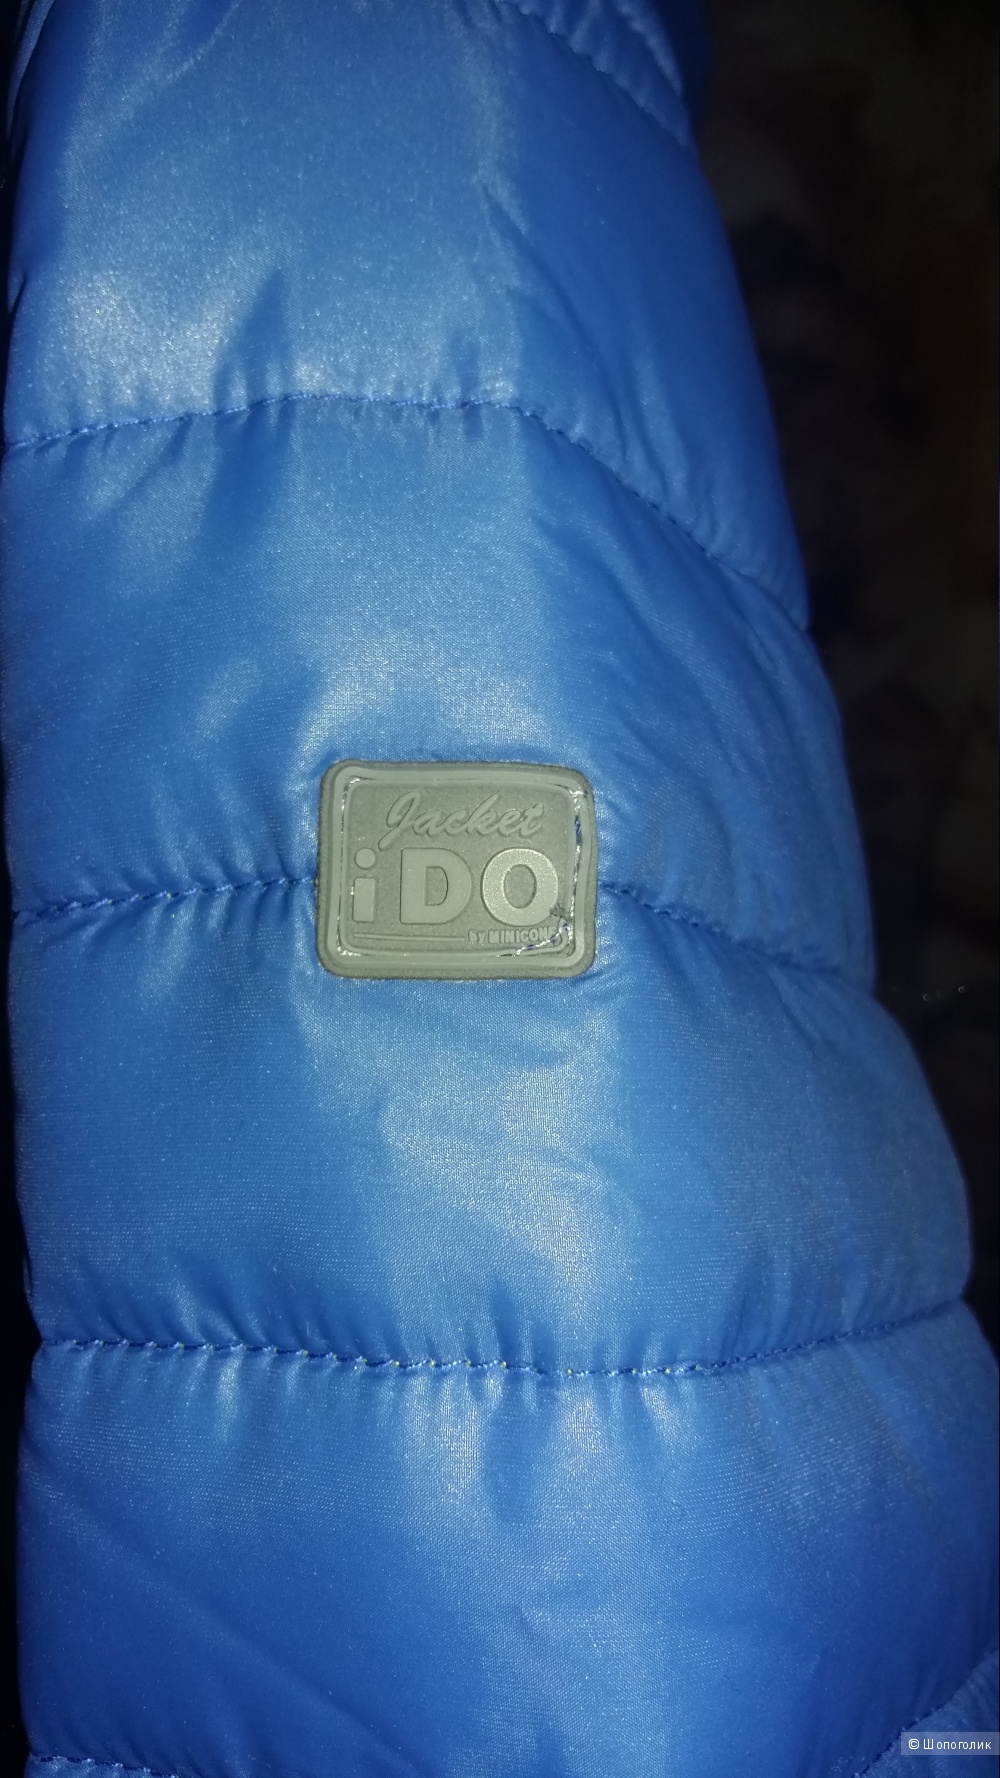 Легкая куртка iDO 164 см (14 лет)